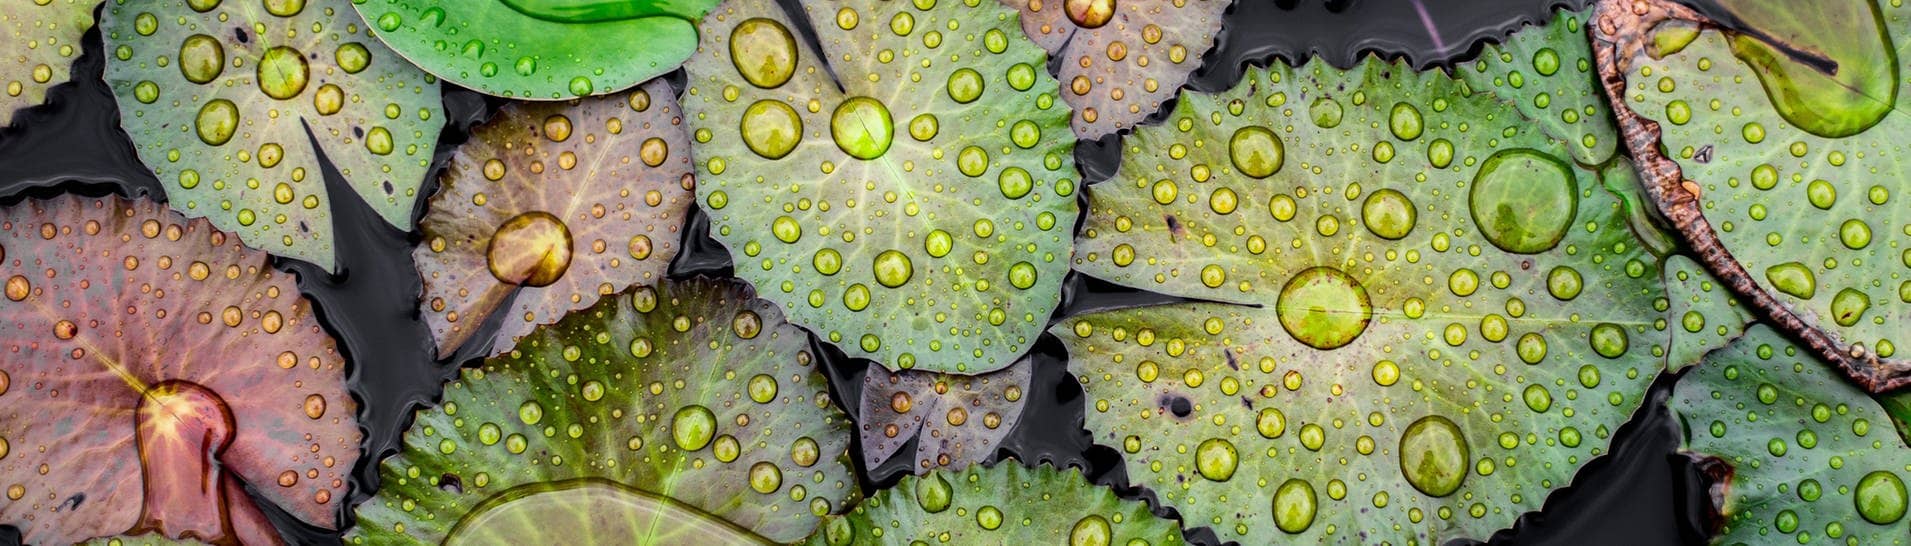 Wassertropfen auf Lotos-Blättern